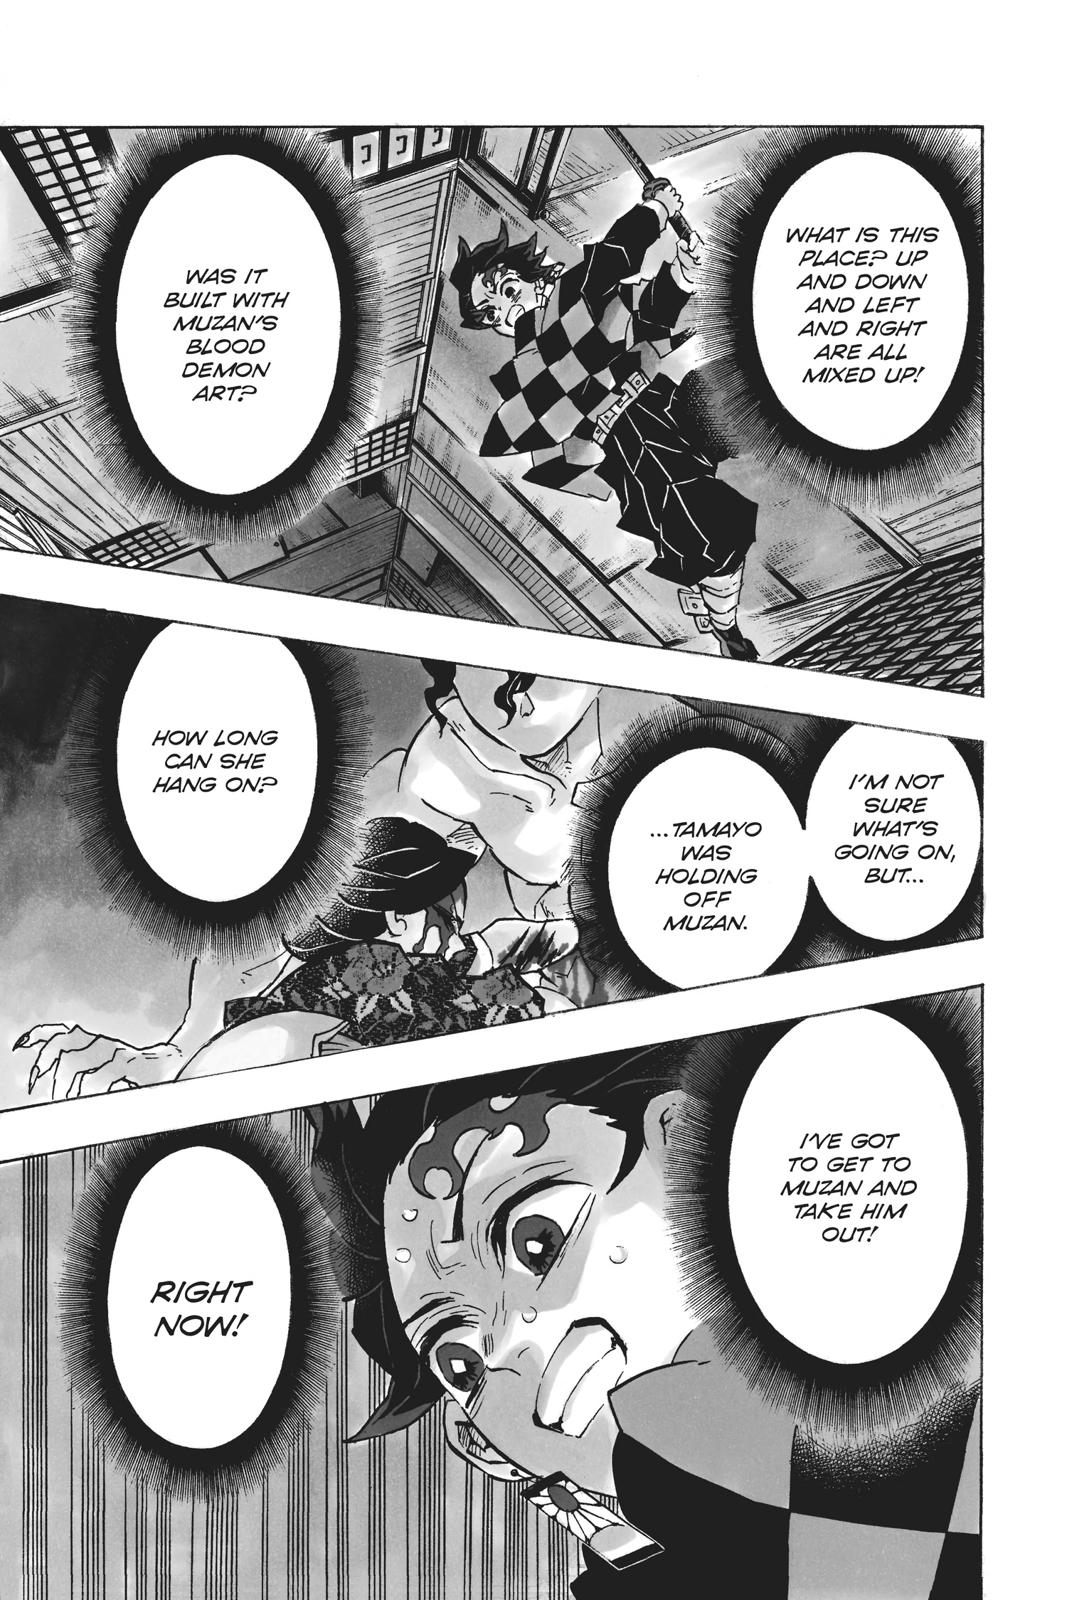 Demon Slayer Manga Manga Chapter - 140 - image 1